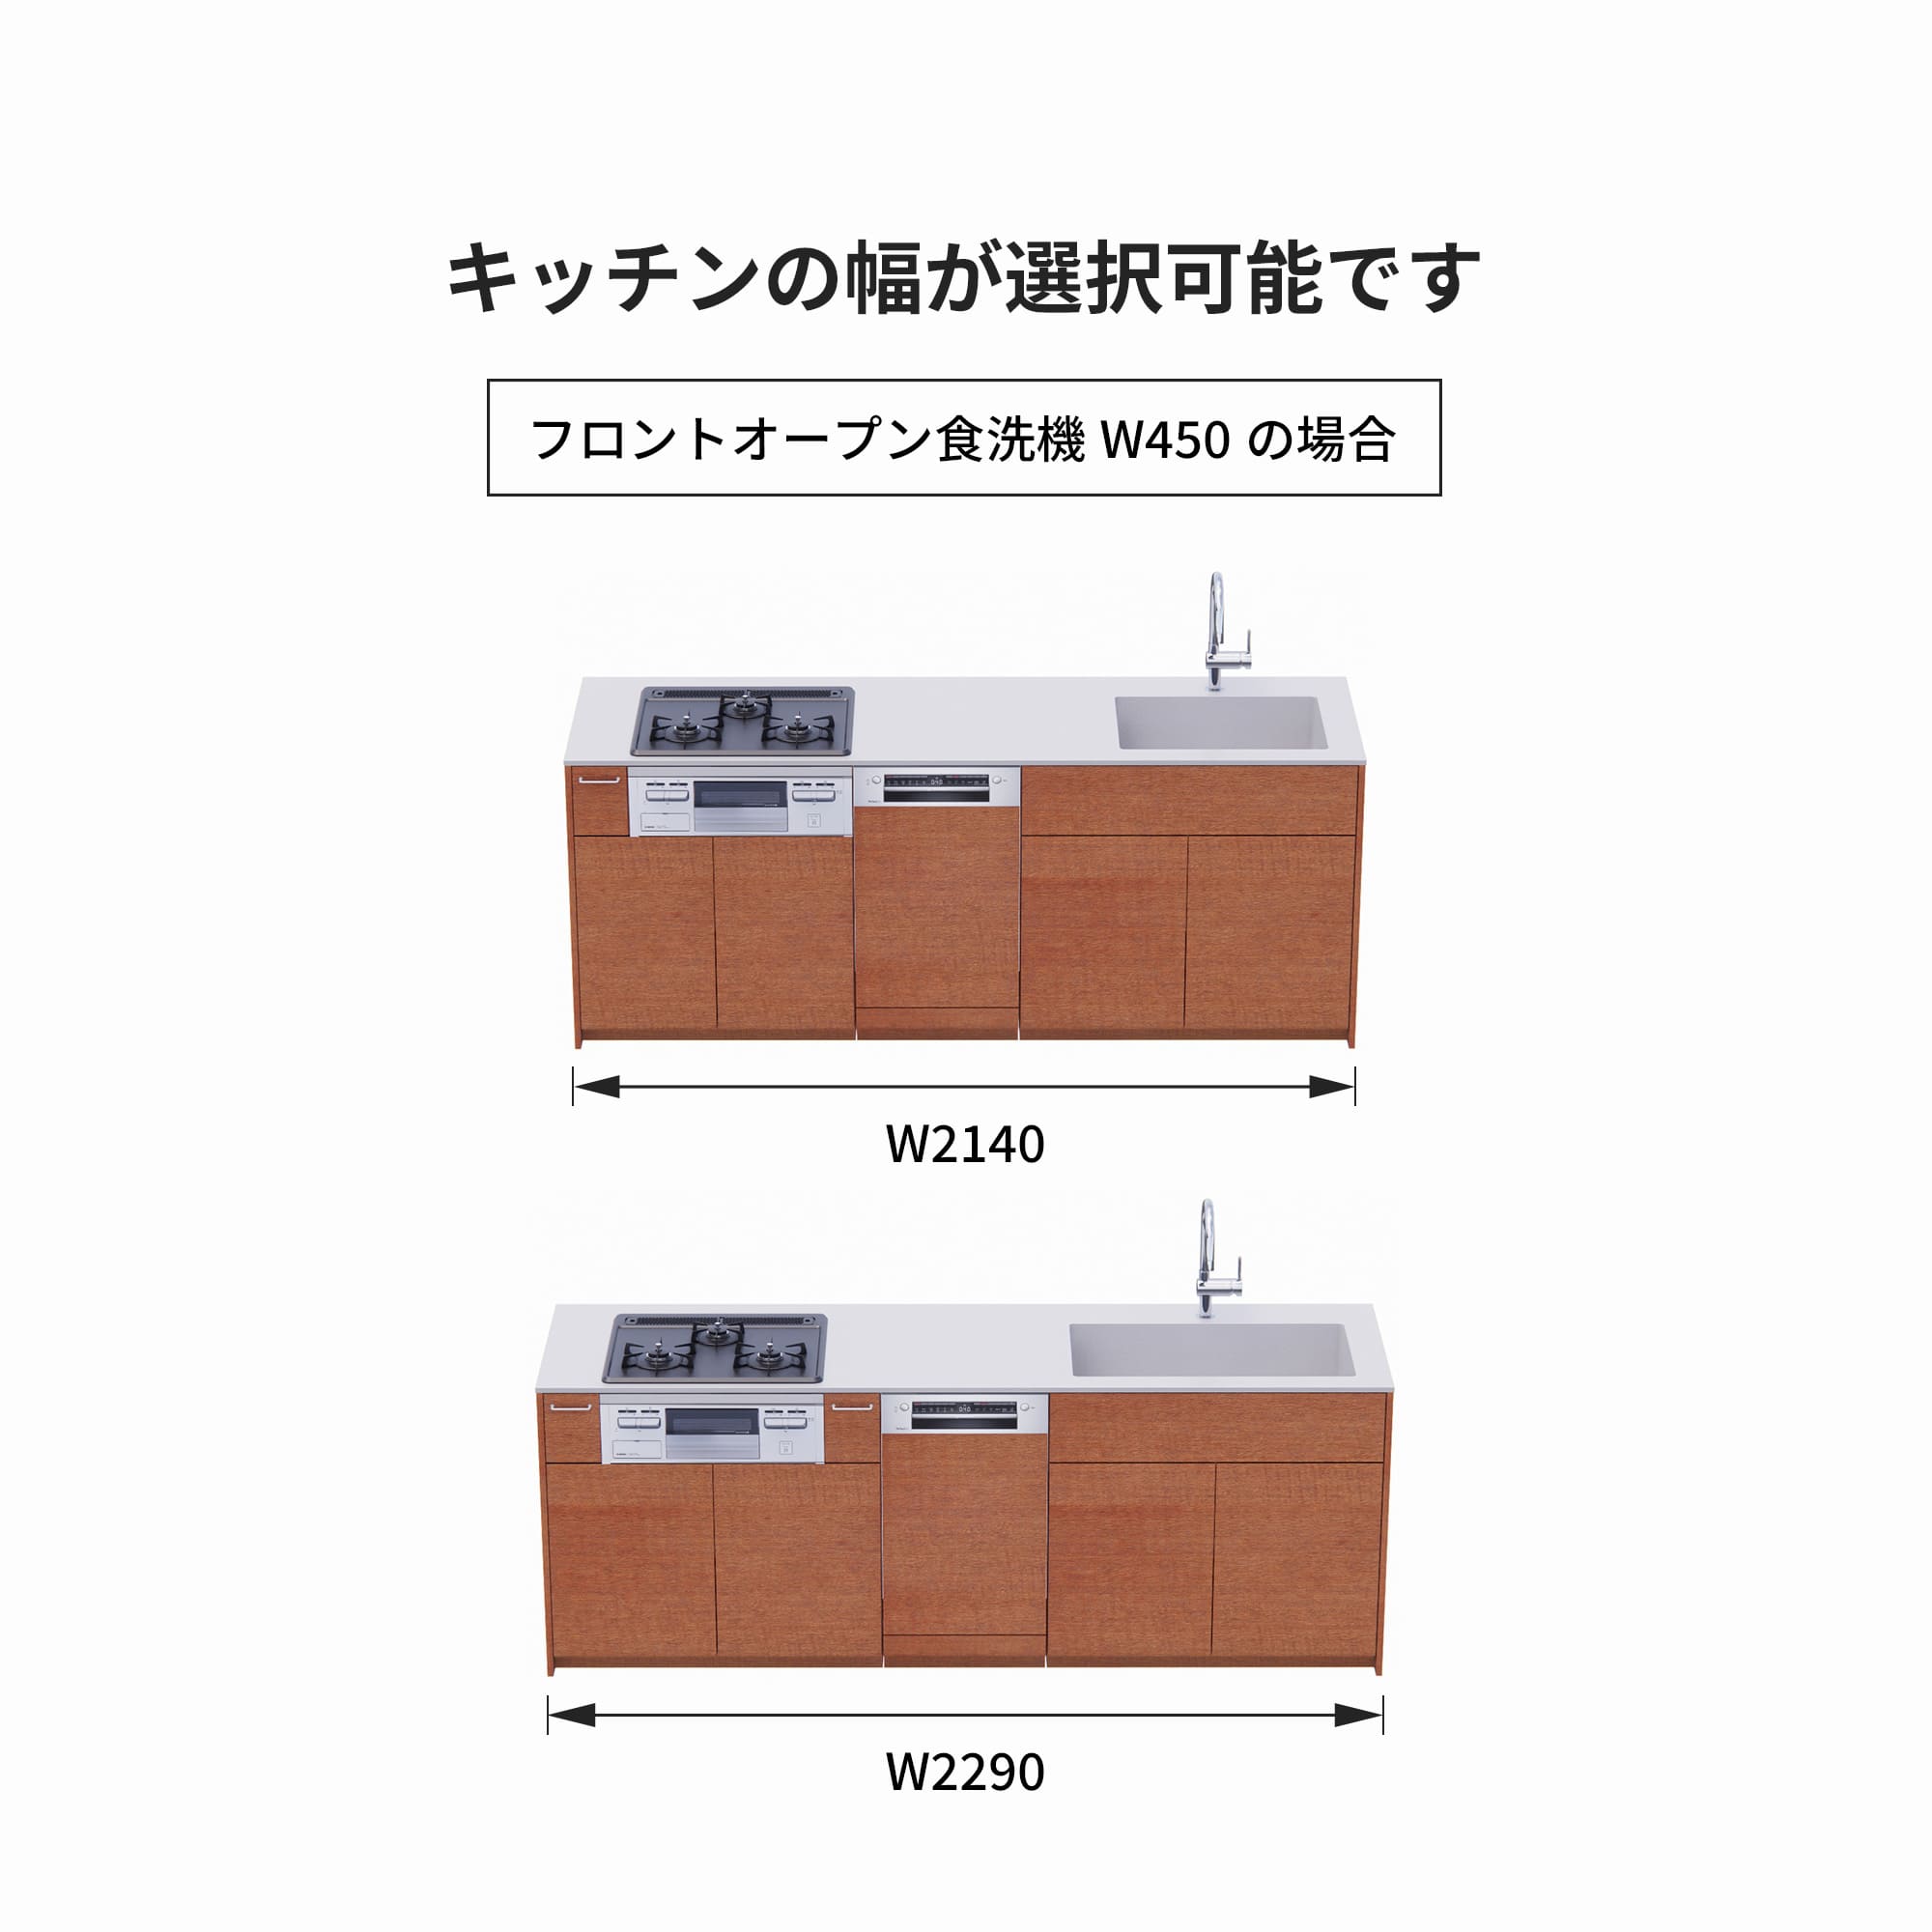 木製システムキッチン 壁付け型 W2140～2290・コンロあり / オーブンなし / 食洗機あり KB-KC022-20-G183 フロントオープン450の場合